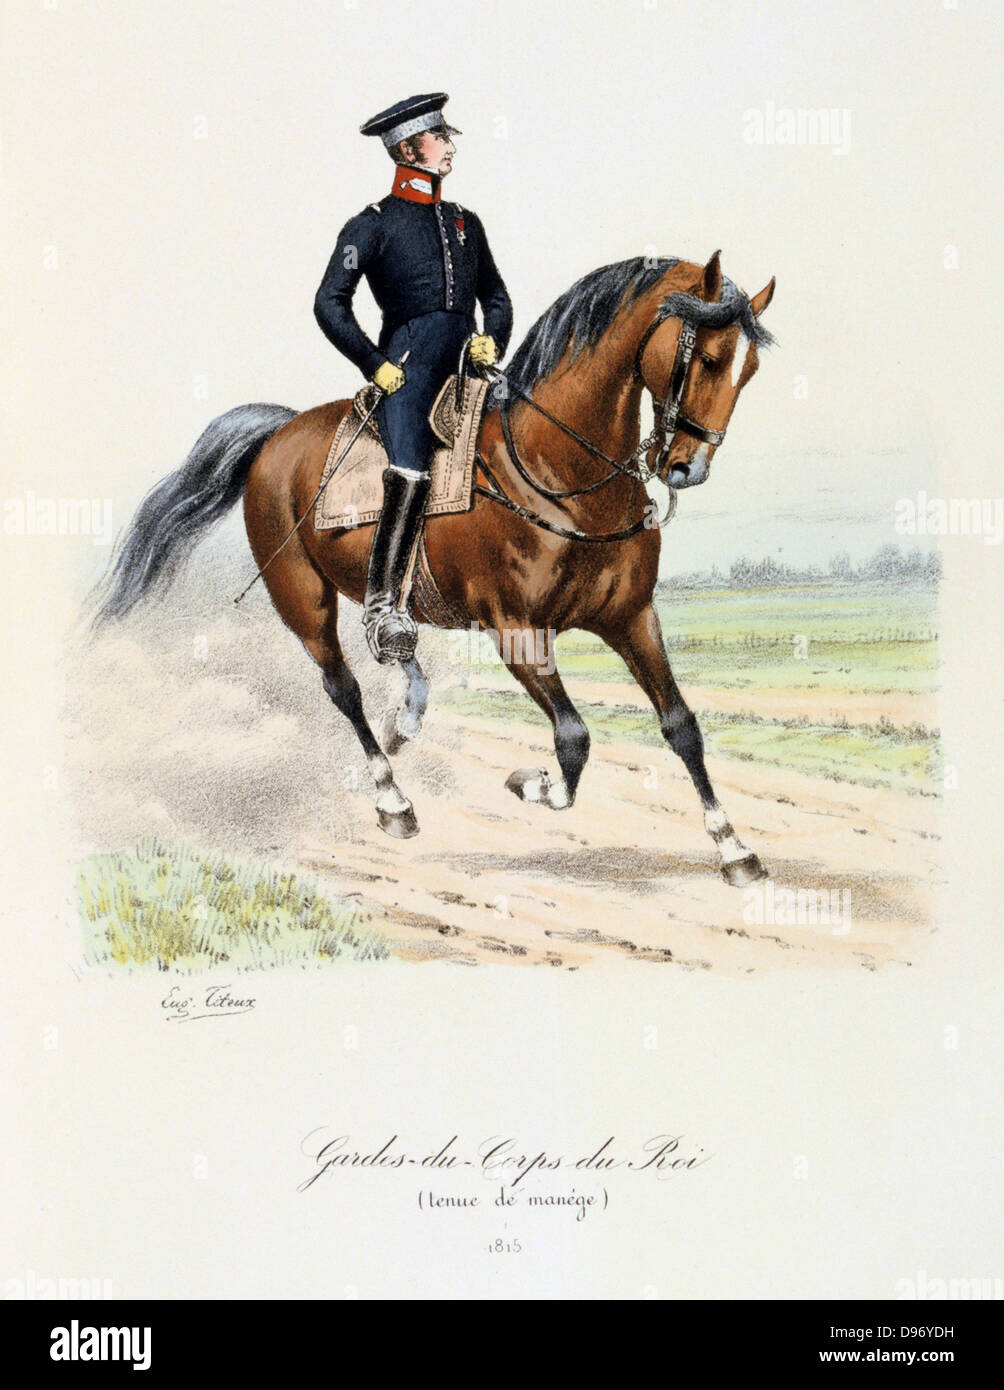 Mounted member of the King's guard. 1815. From 'Histoire de la maison militaire du Roi de 1814 a 1830' by Eugene Titeux, Paris, 1890. Stock Photo